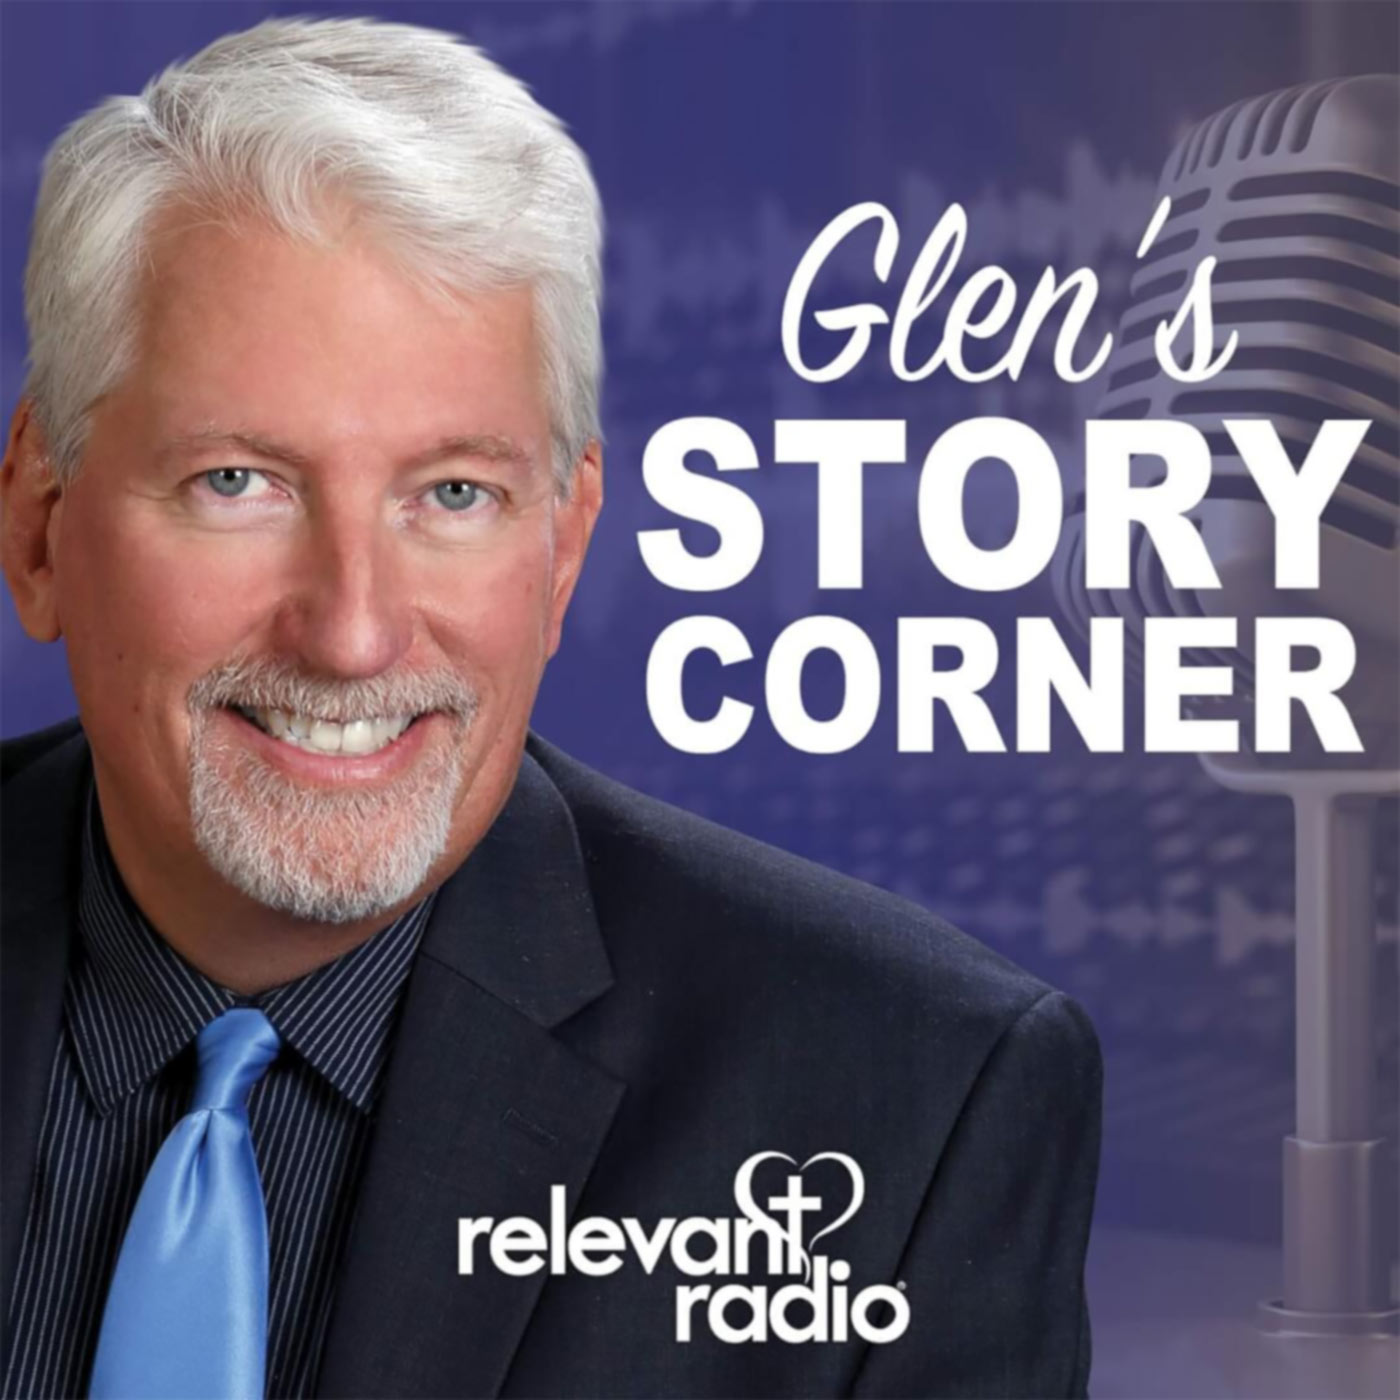 Glen's Story Corner